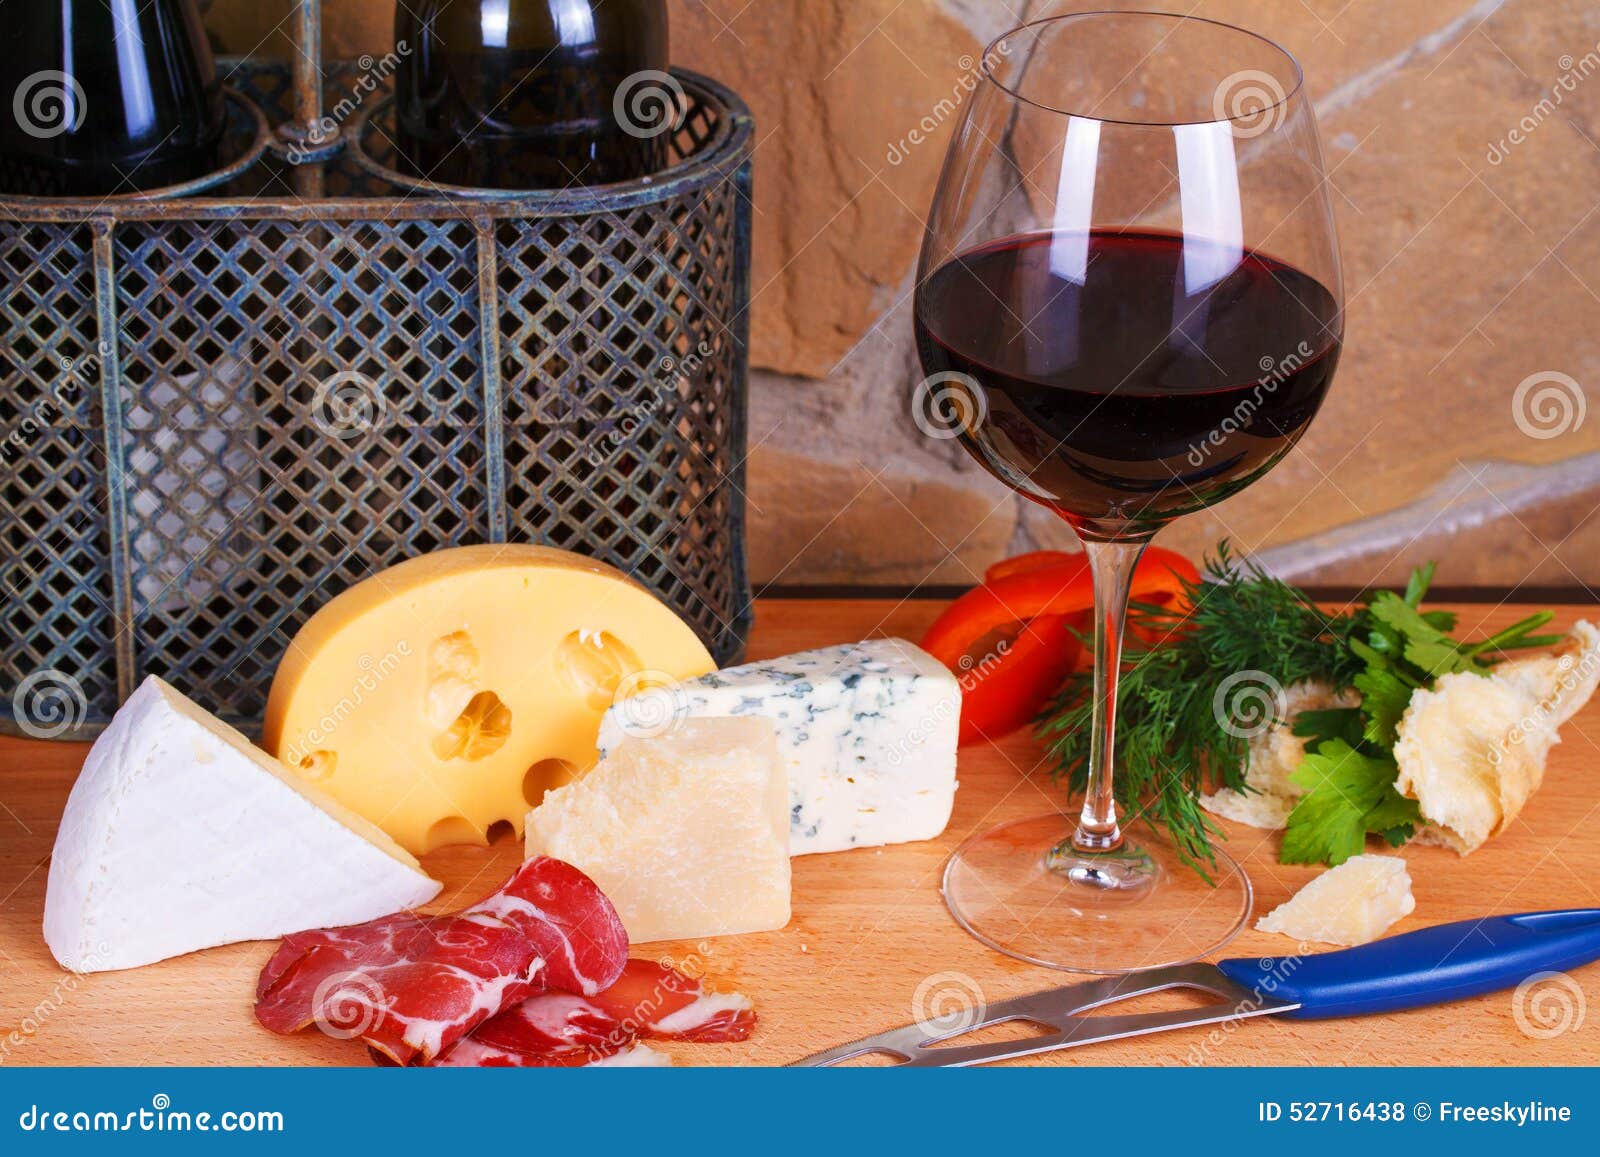 Сыр вино санкт петербург